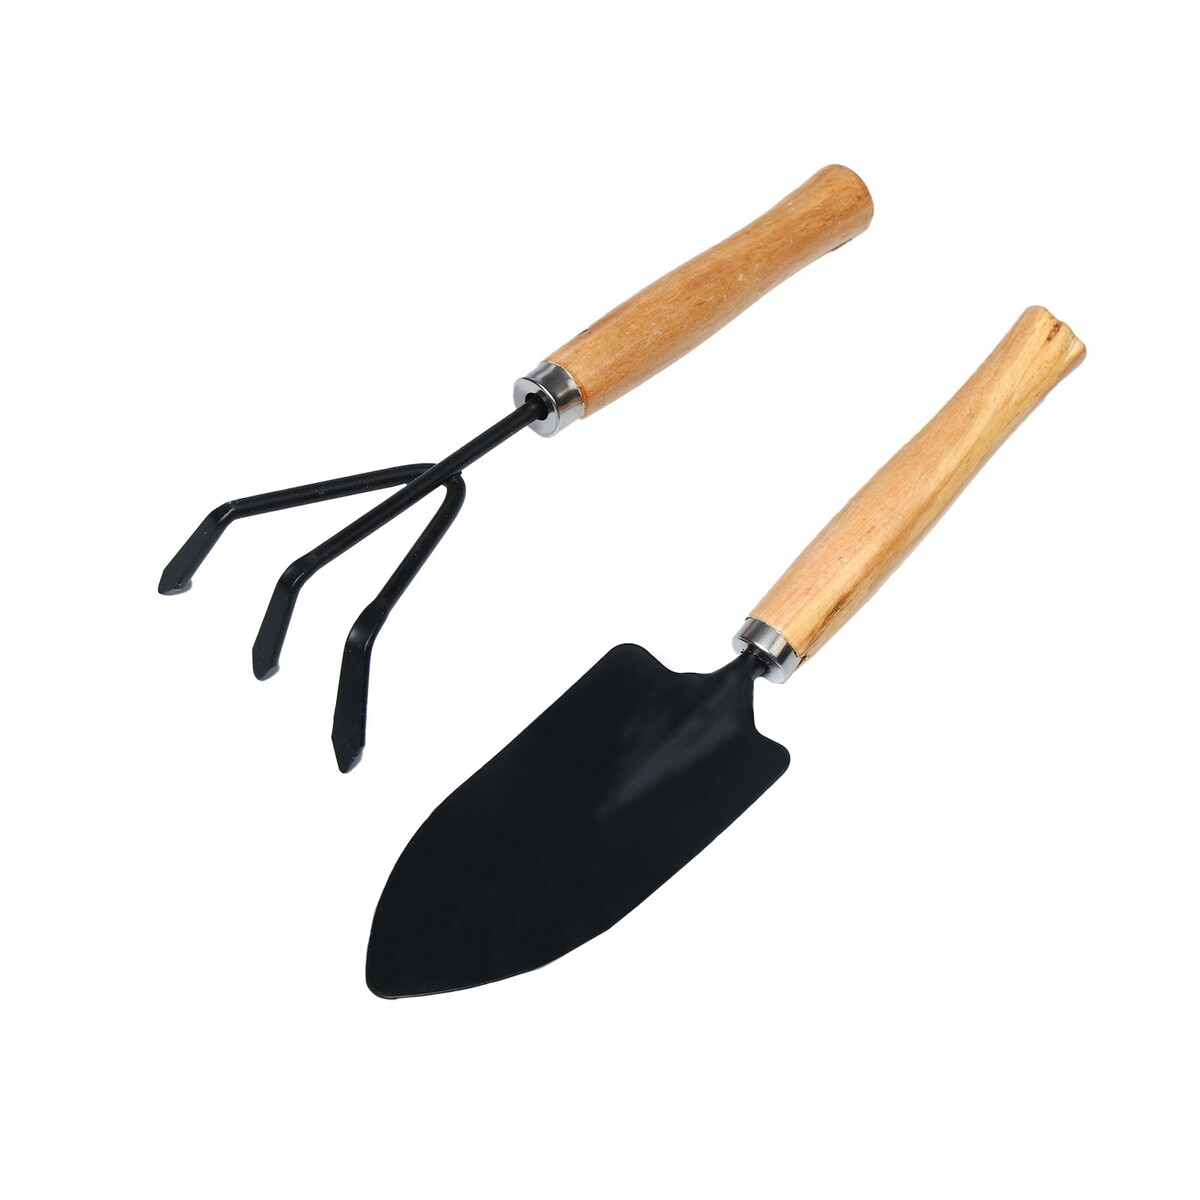 Набор садового инструмента, 2 предмета: рыхлитель, совок, длина 26 см, деревянные ручки набор совок и щётка paul masquin в ассортименте